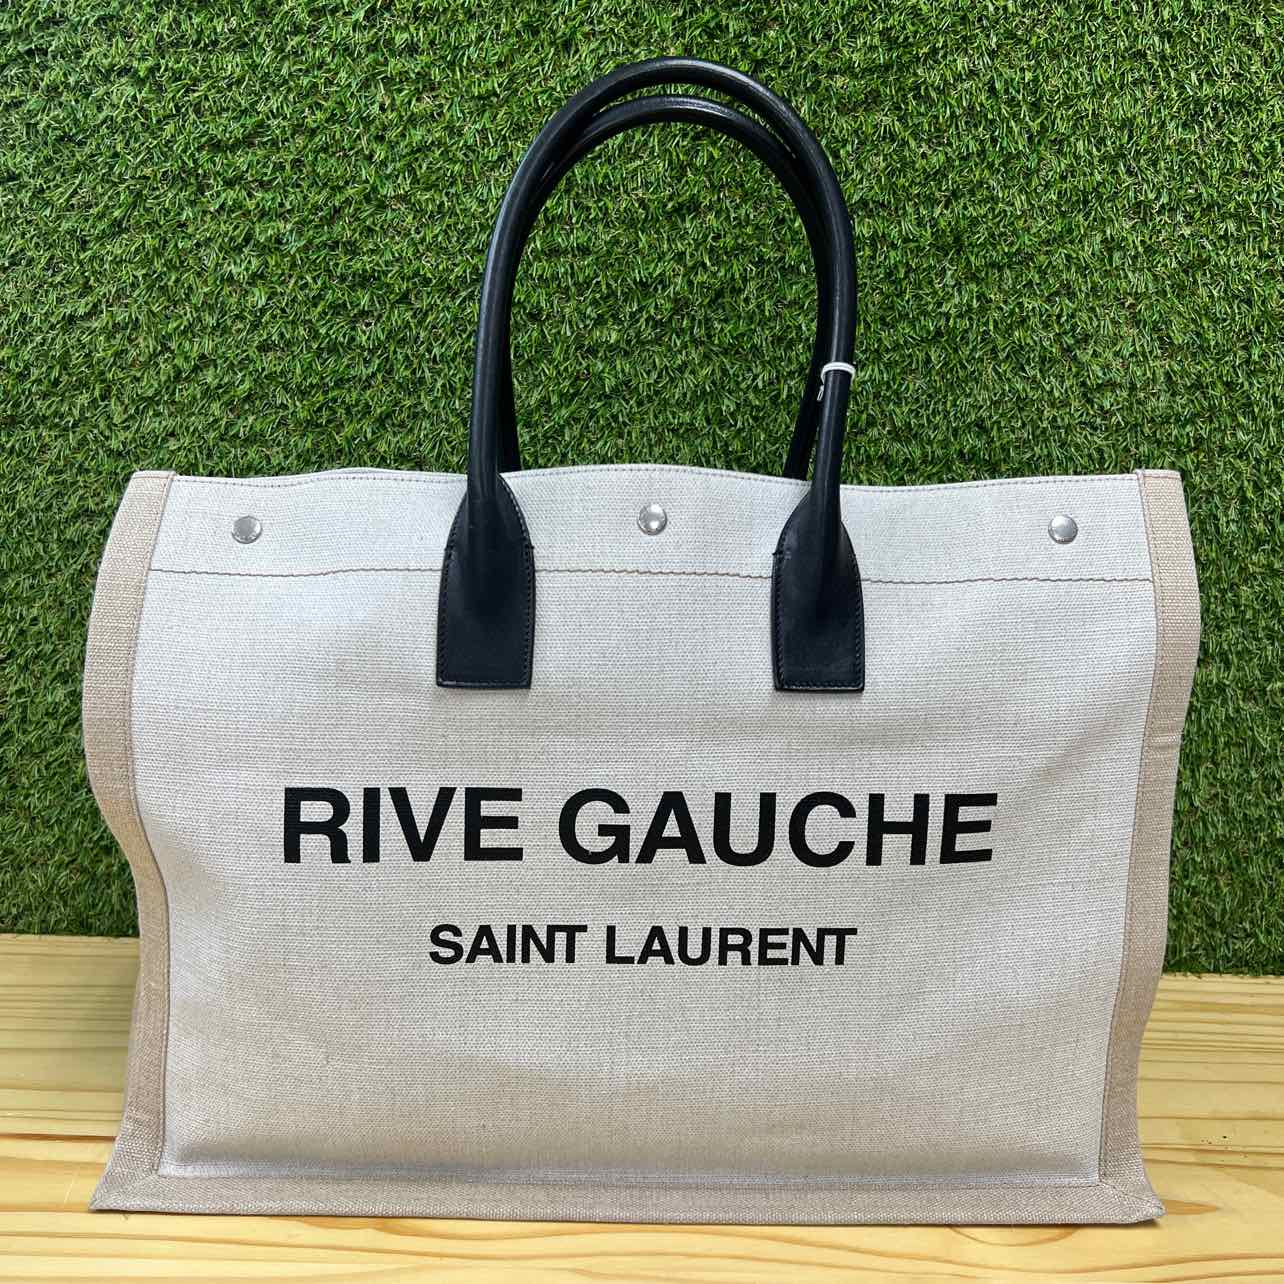 YSL Tote Bag "RIVE GAUCHE" Used Cream Size Small